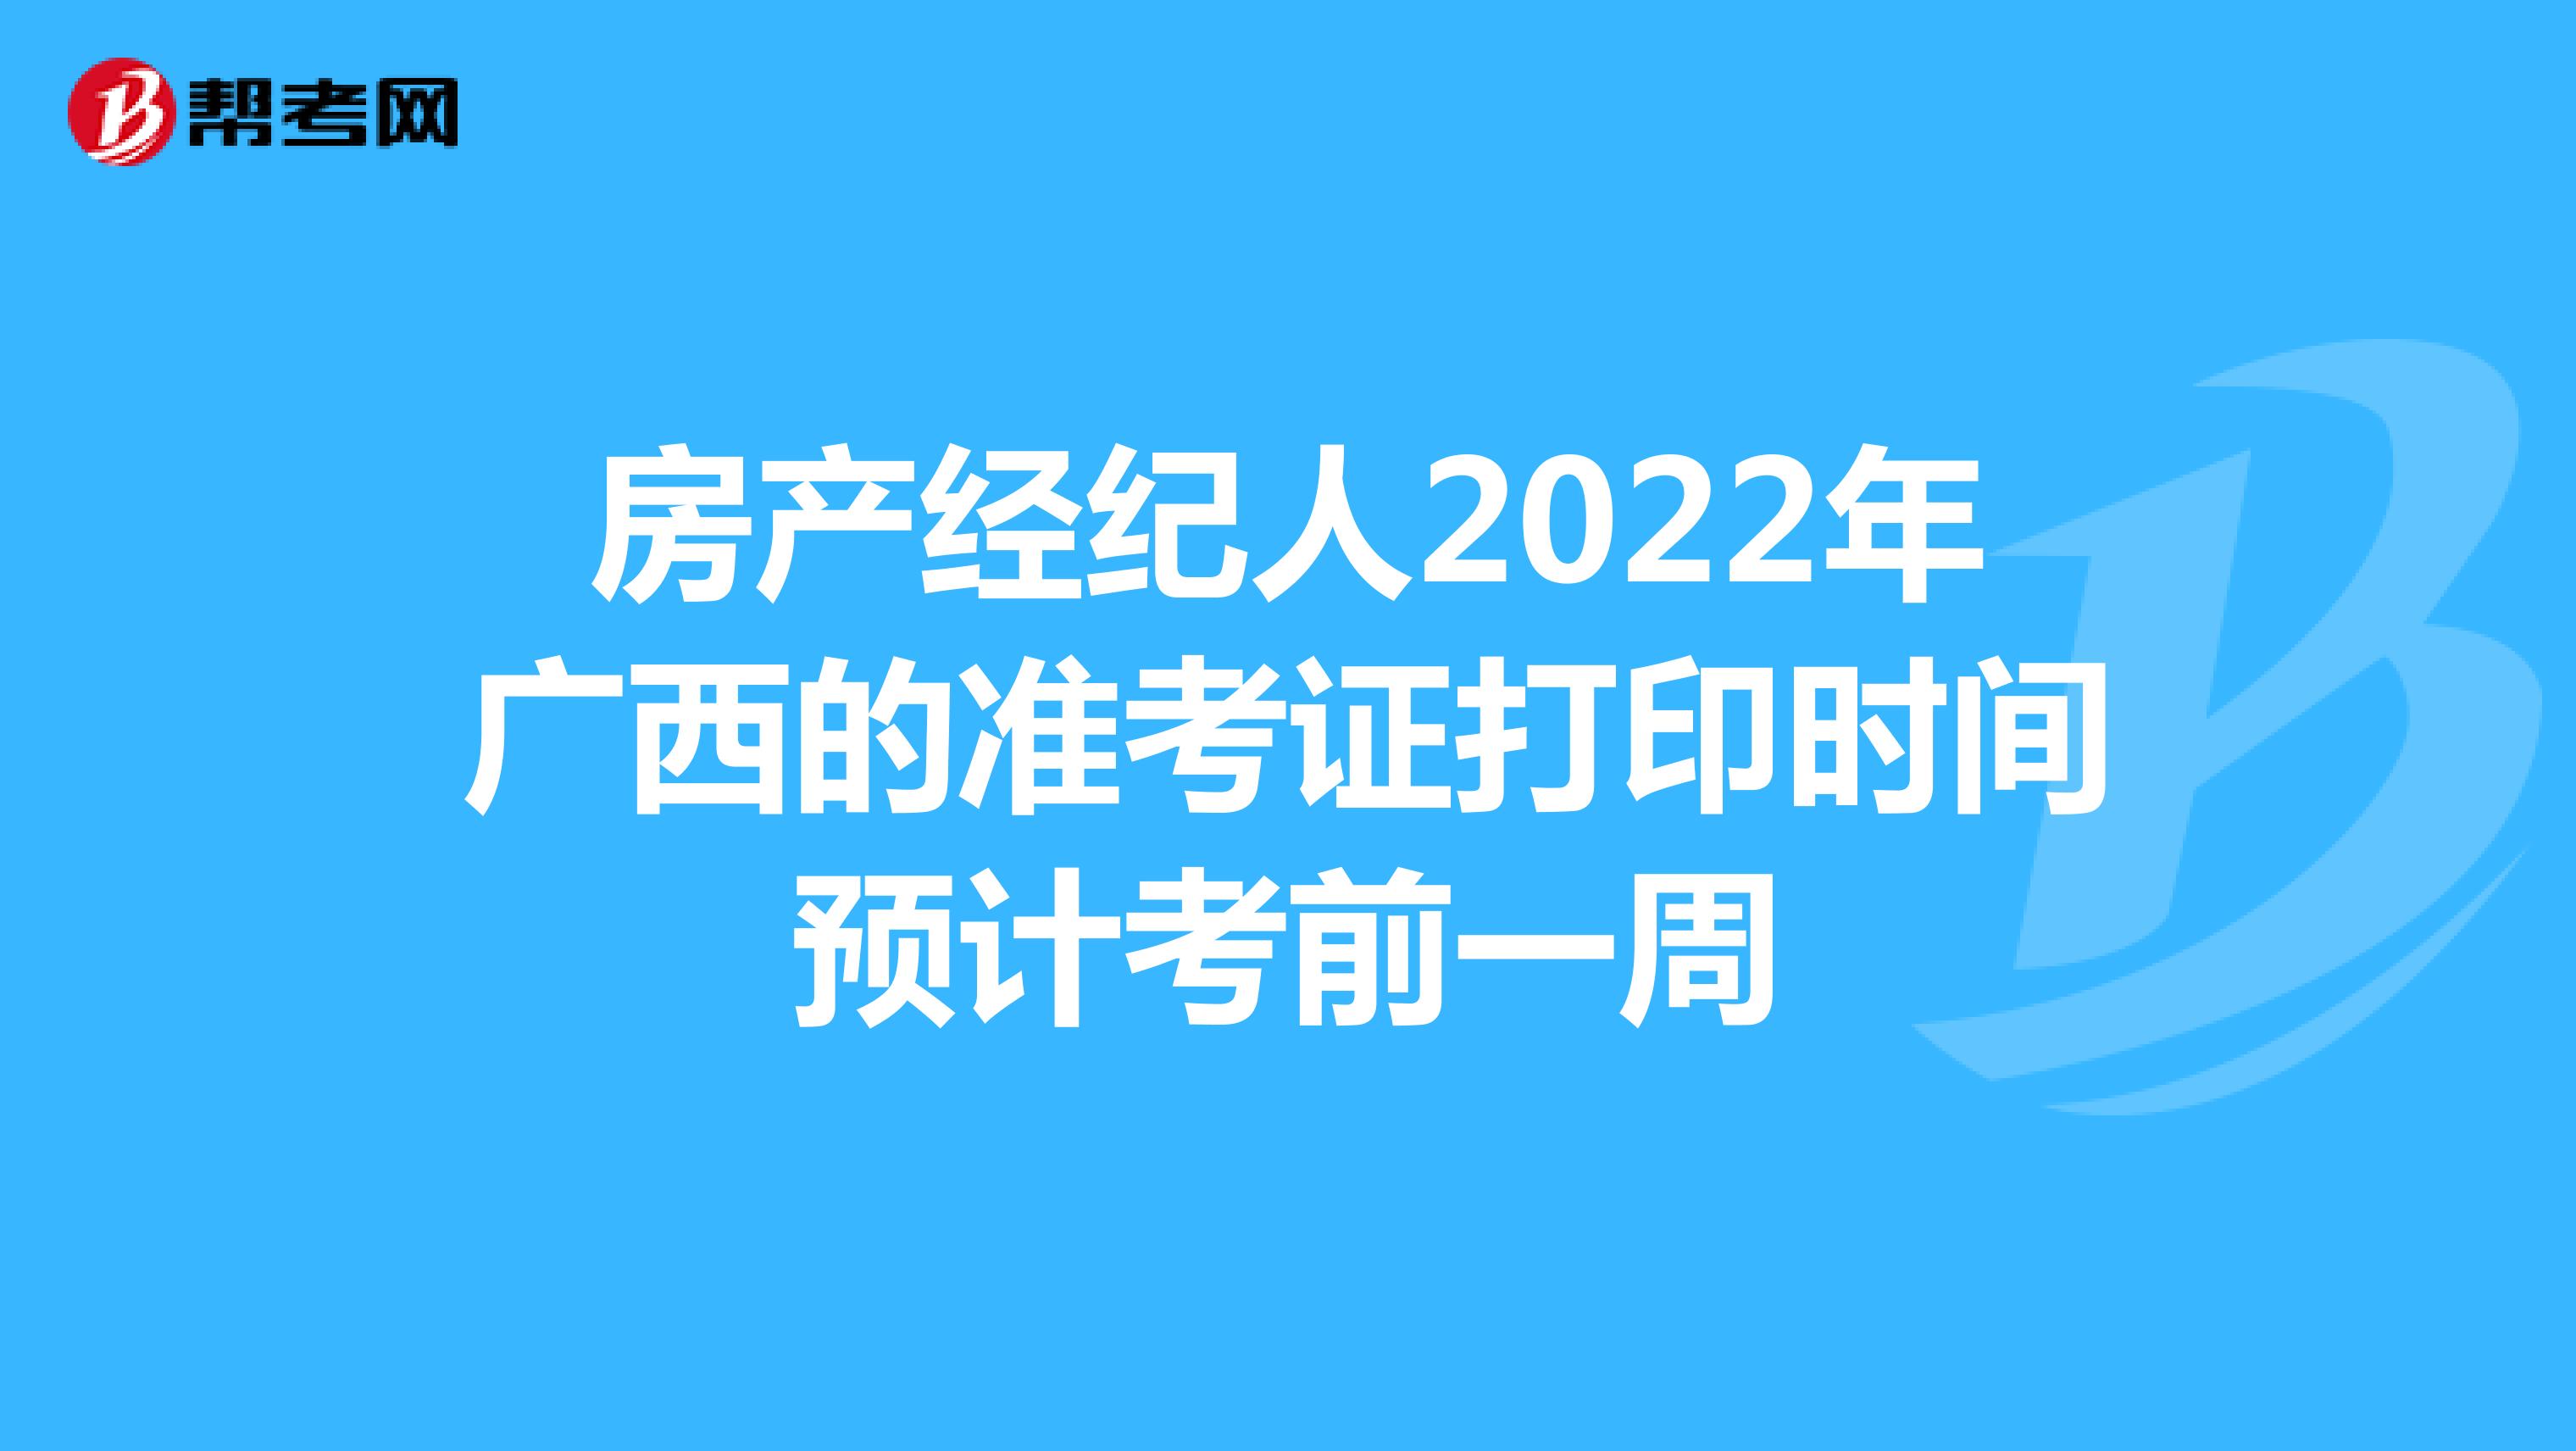 房产经纪人2022年广西的准考证打印时间预计考前一周